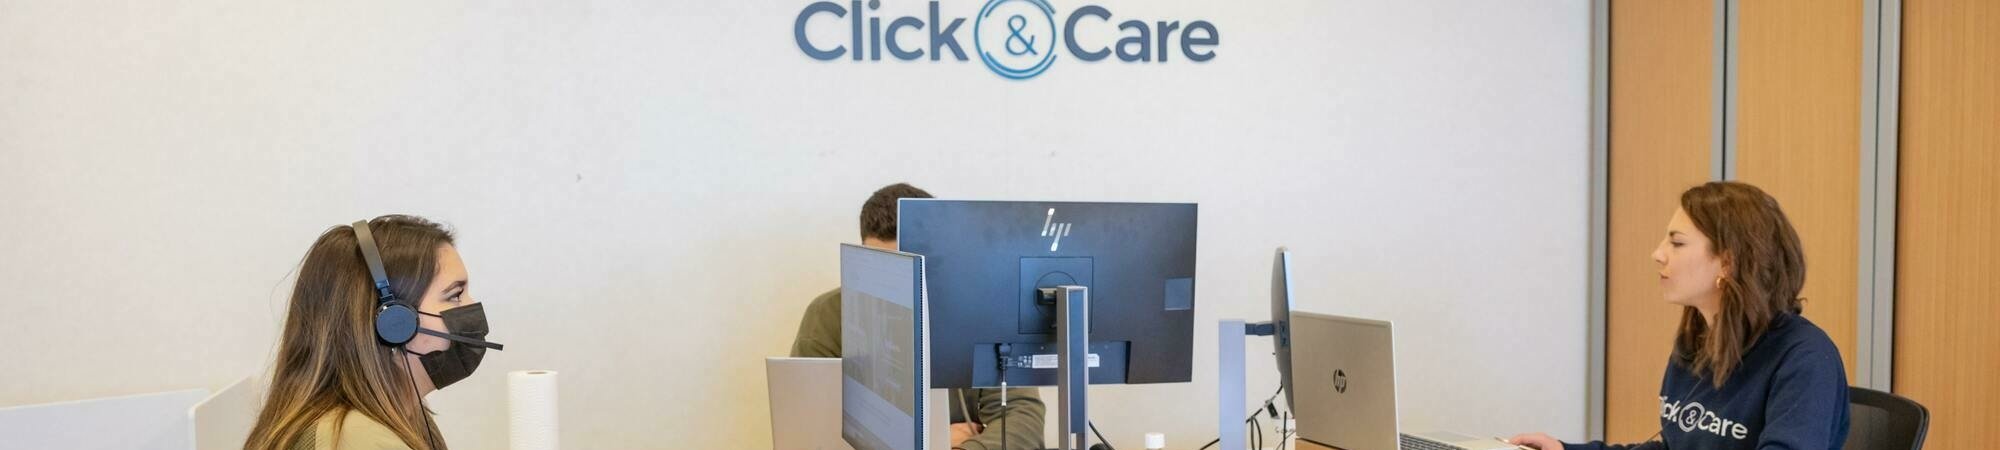 Click&Care